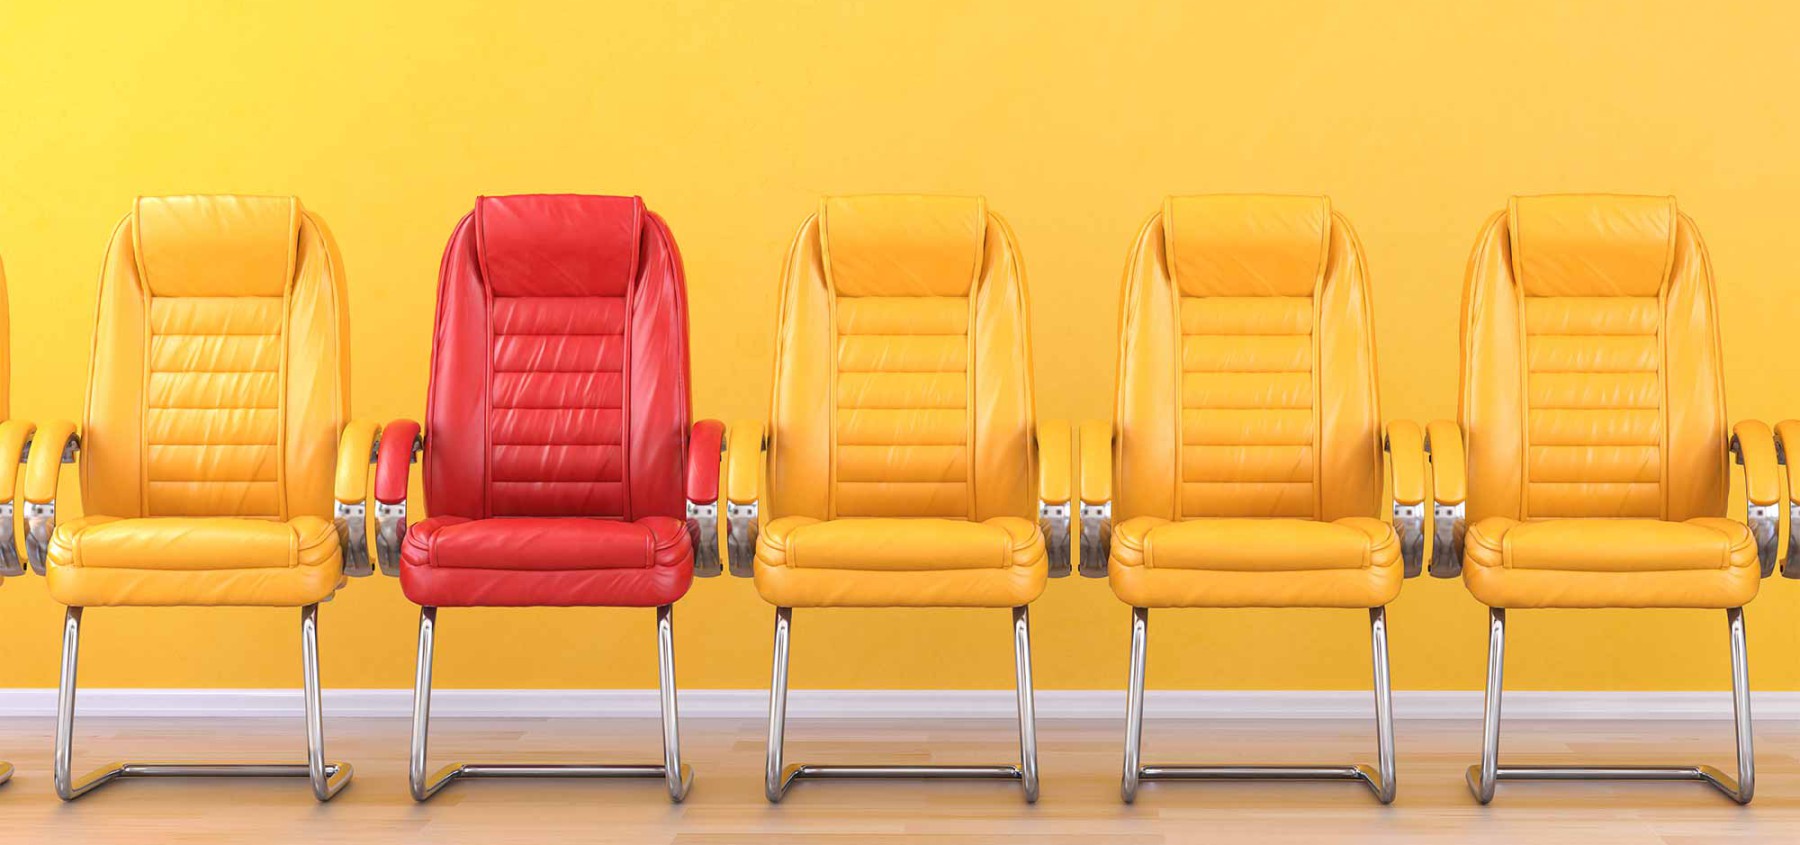 sillas amarillas asiento rojo oficinas inclusiva diferente